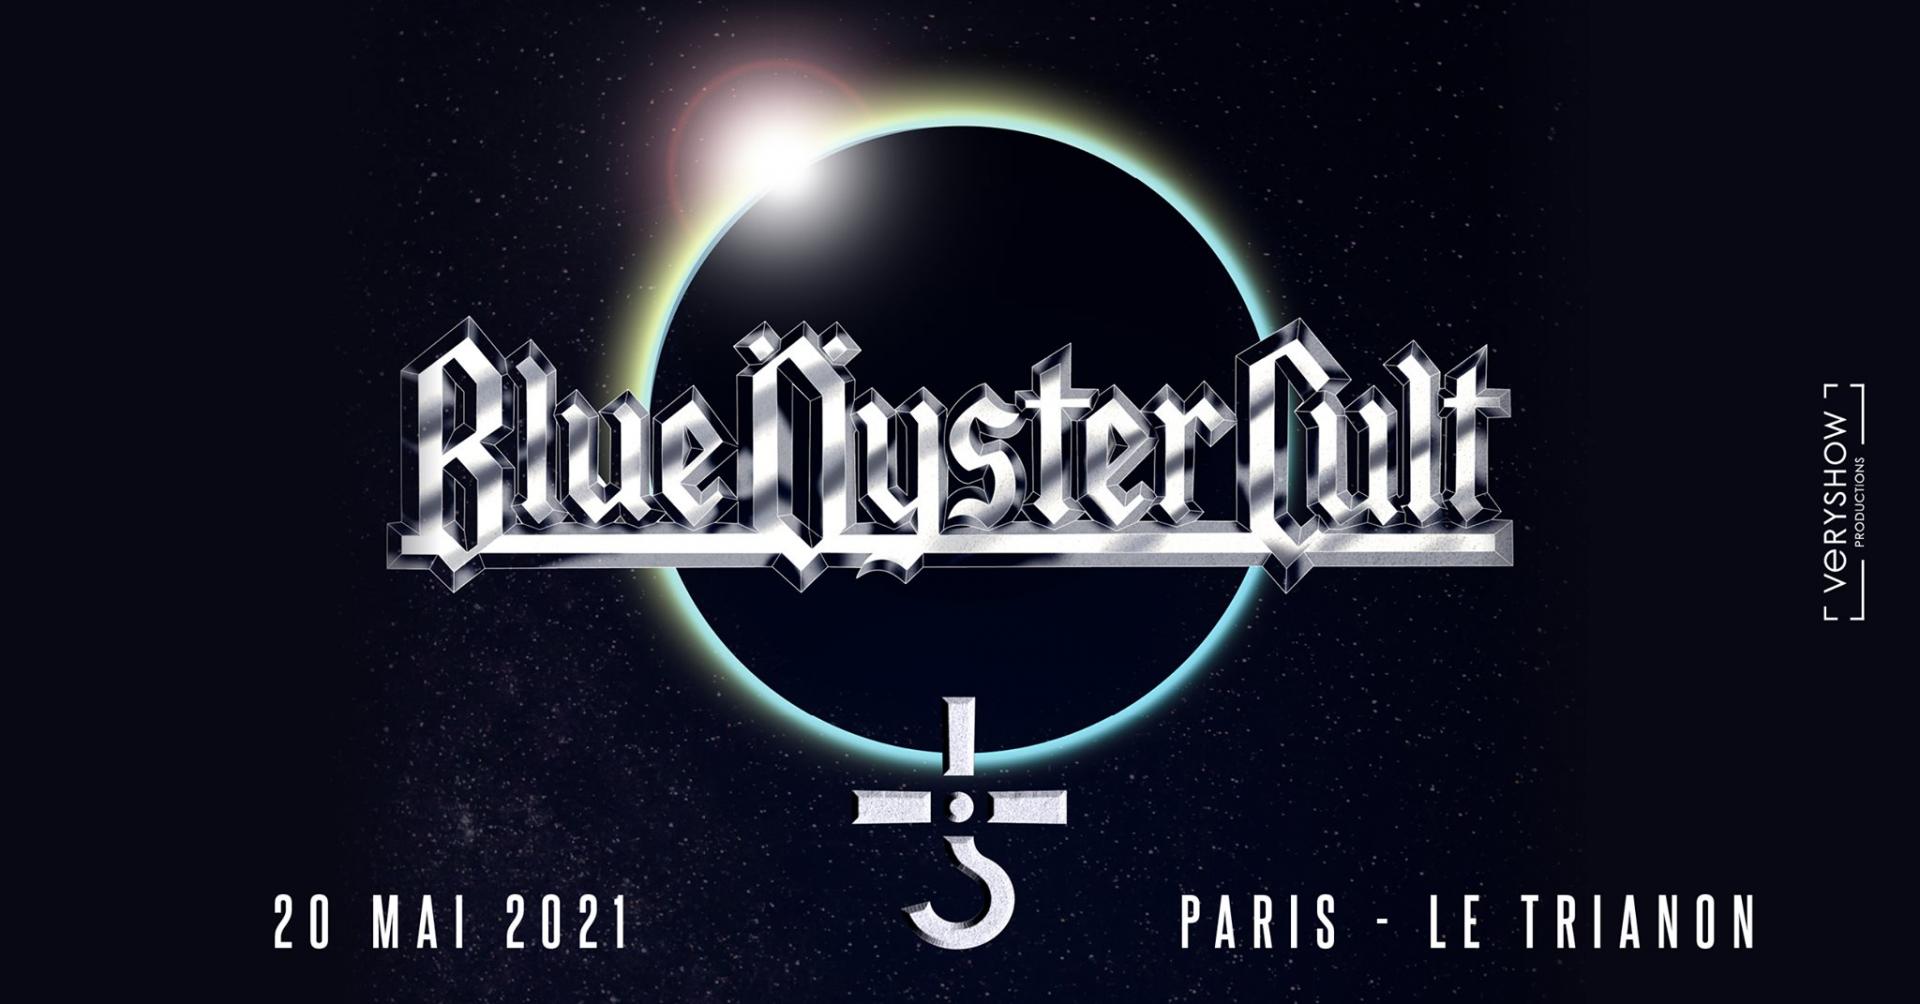 Blue oyster cult paris 2021